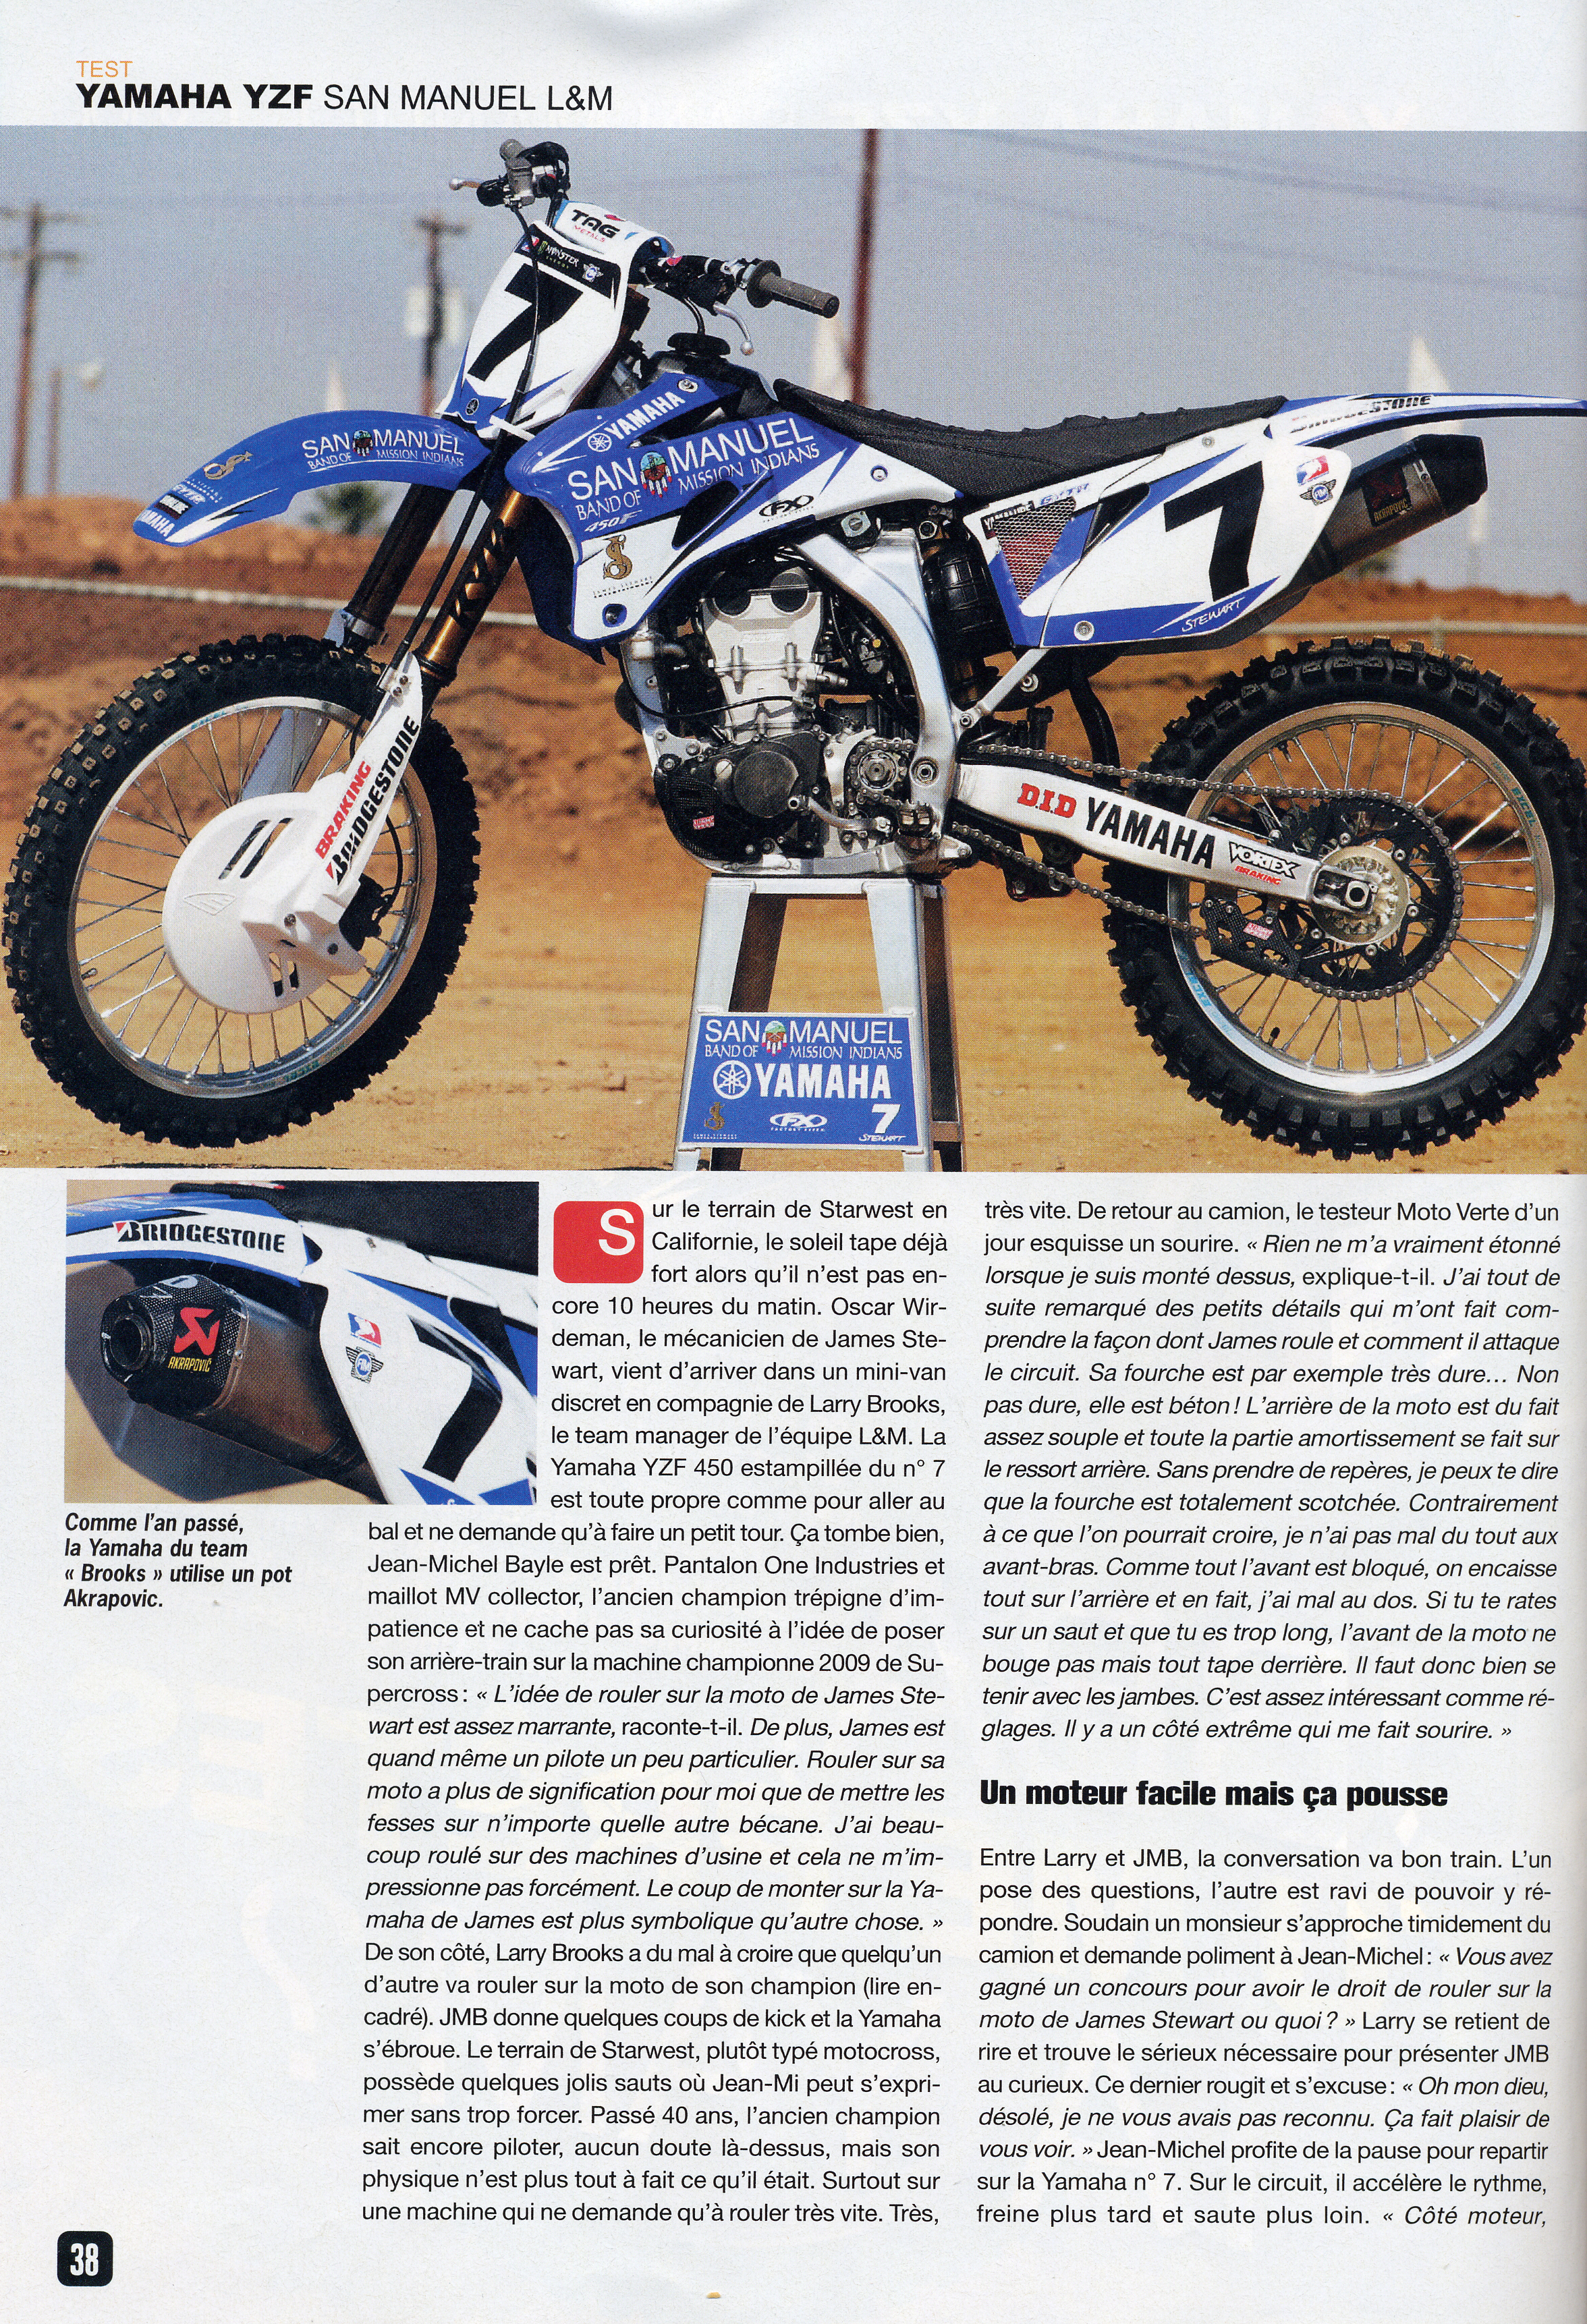 Jean-Michel Bayle teste la moto de James Stewart dans le magazine Moto Verte de Juillet, voilà la page 38